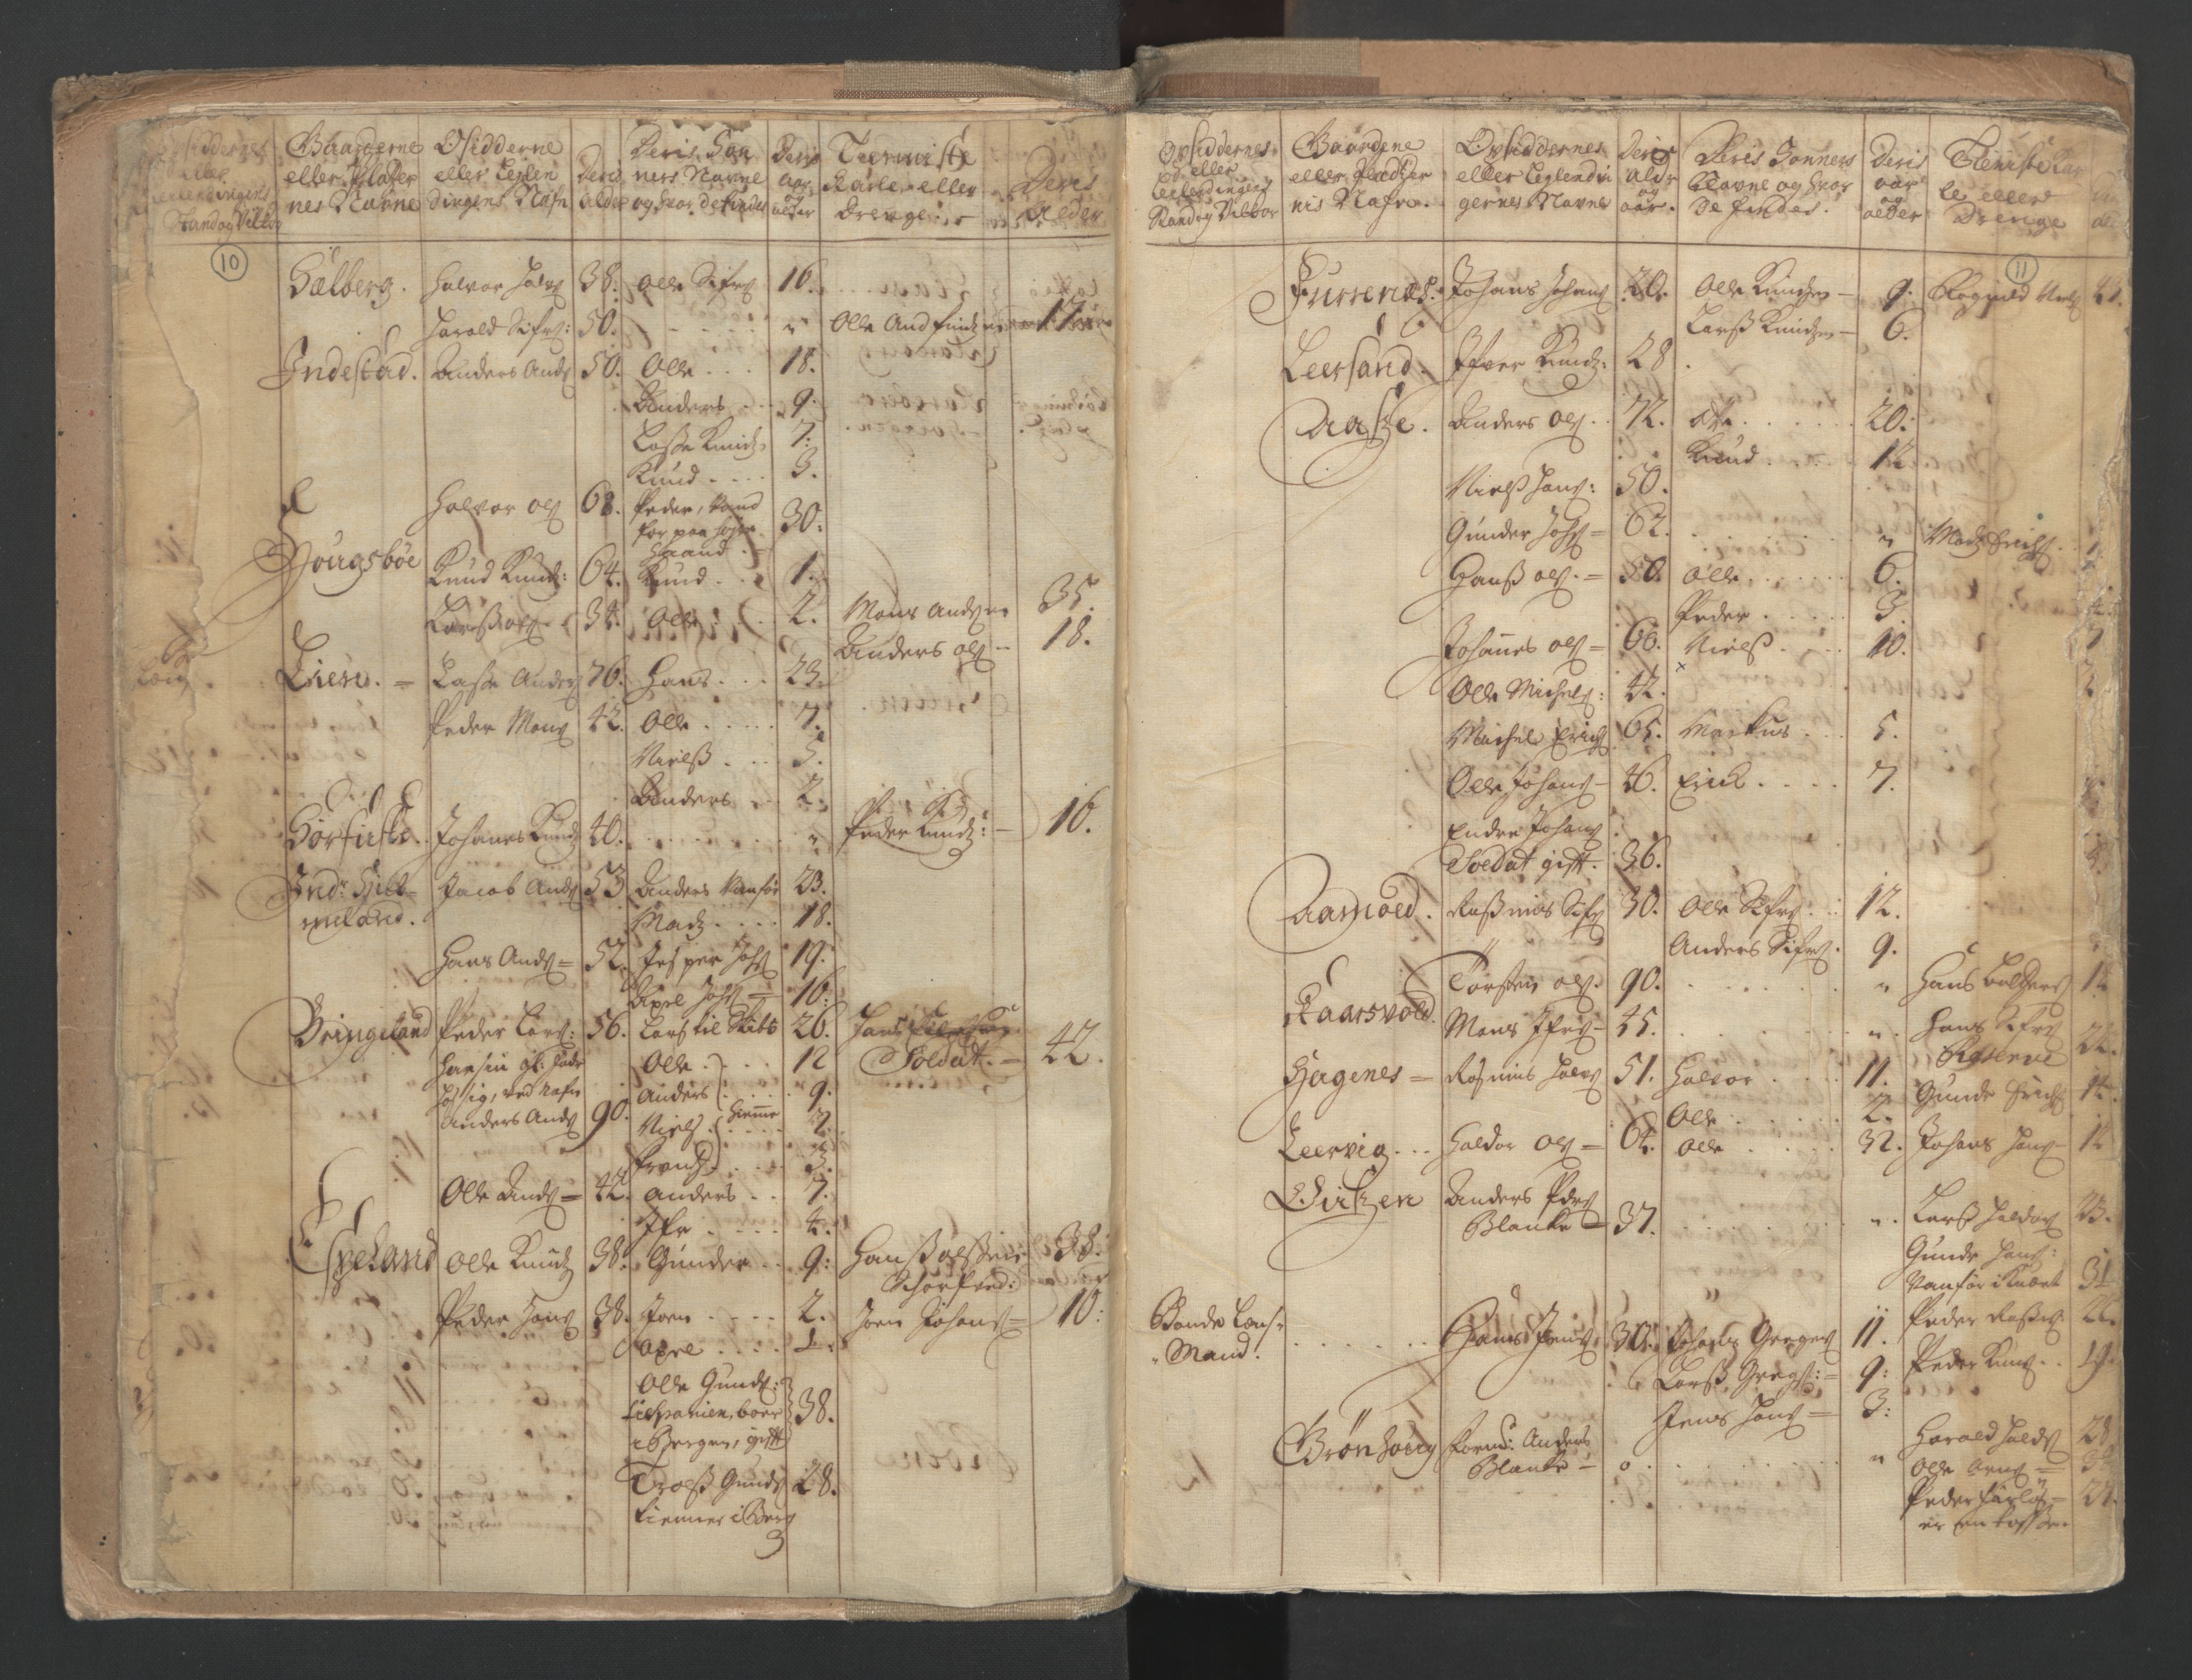 RA, Census (manntall) 1701, no. 9: Sunnfjord fogderi, Nordfjord fogderi and Svanø birk, 1701, p. 10-11